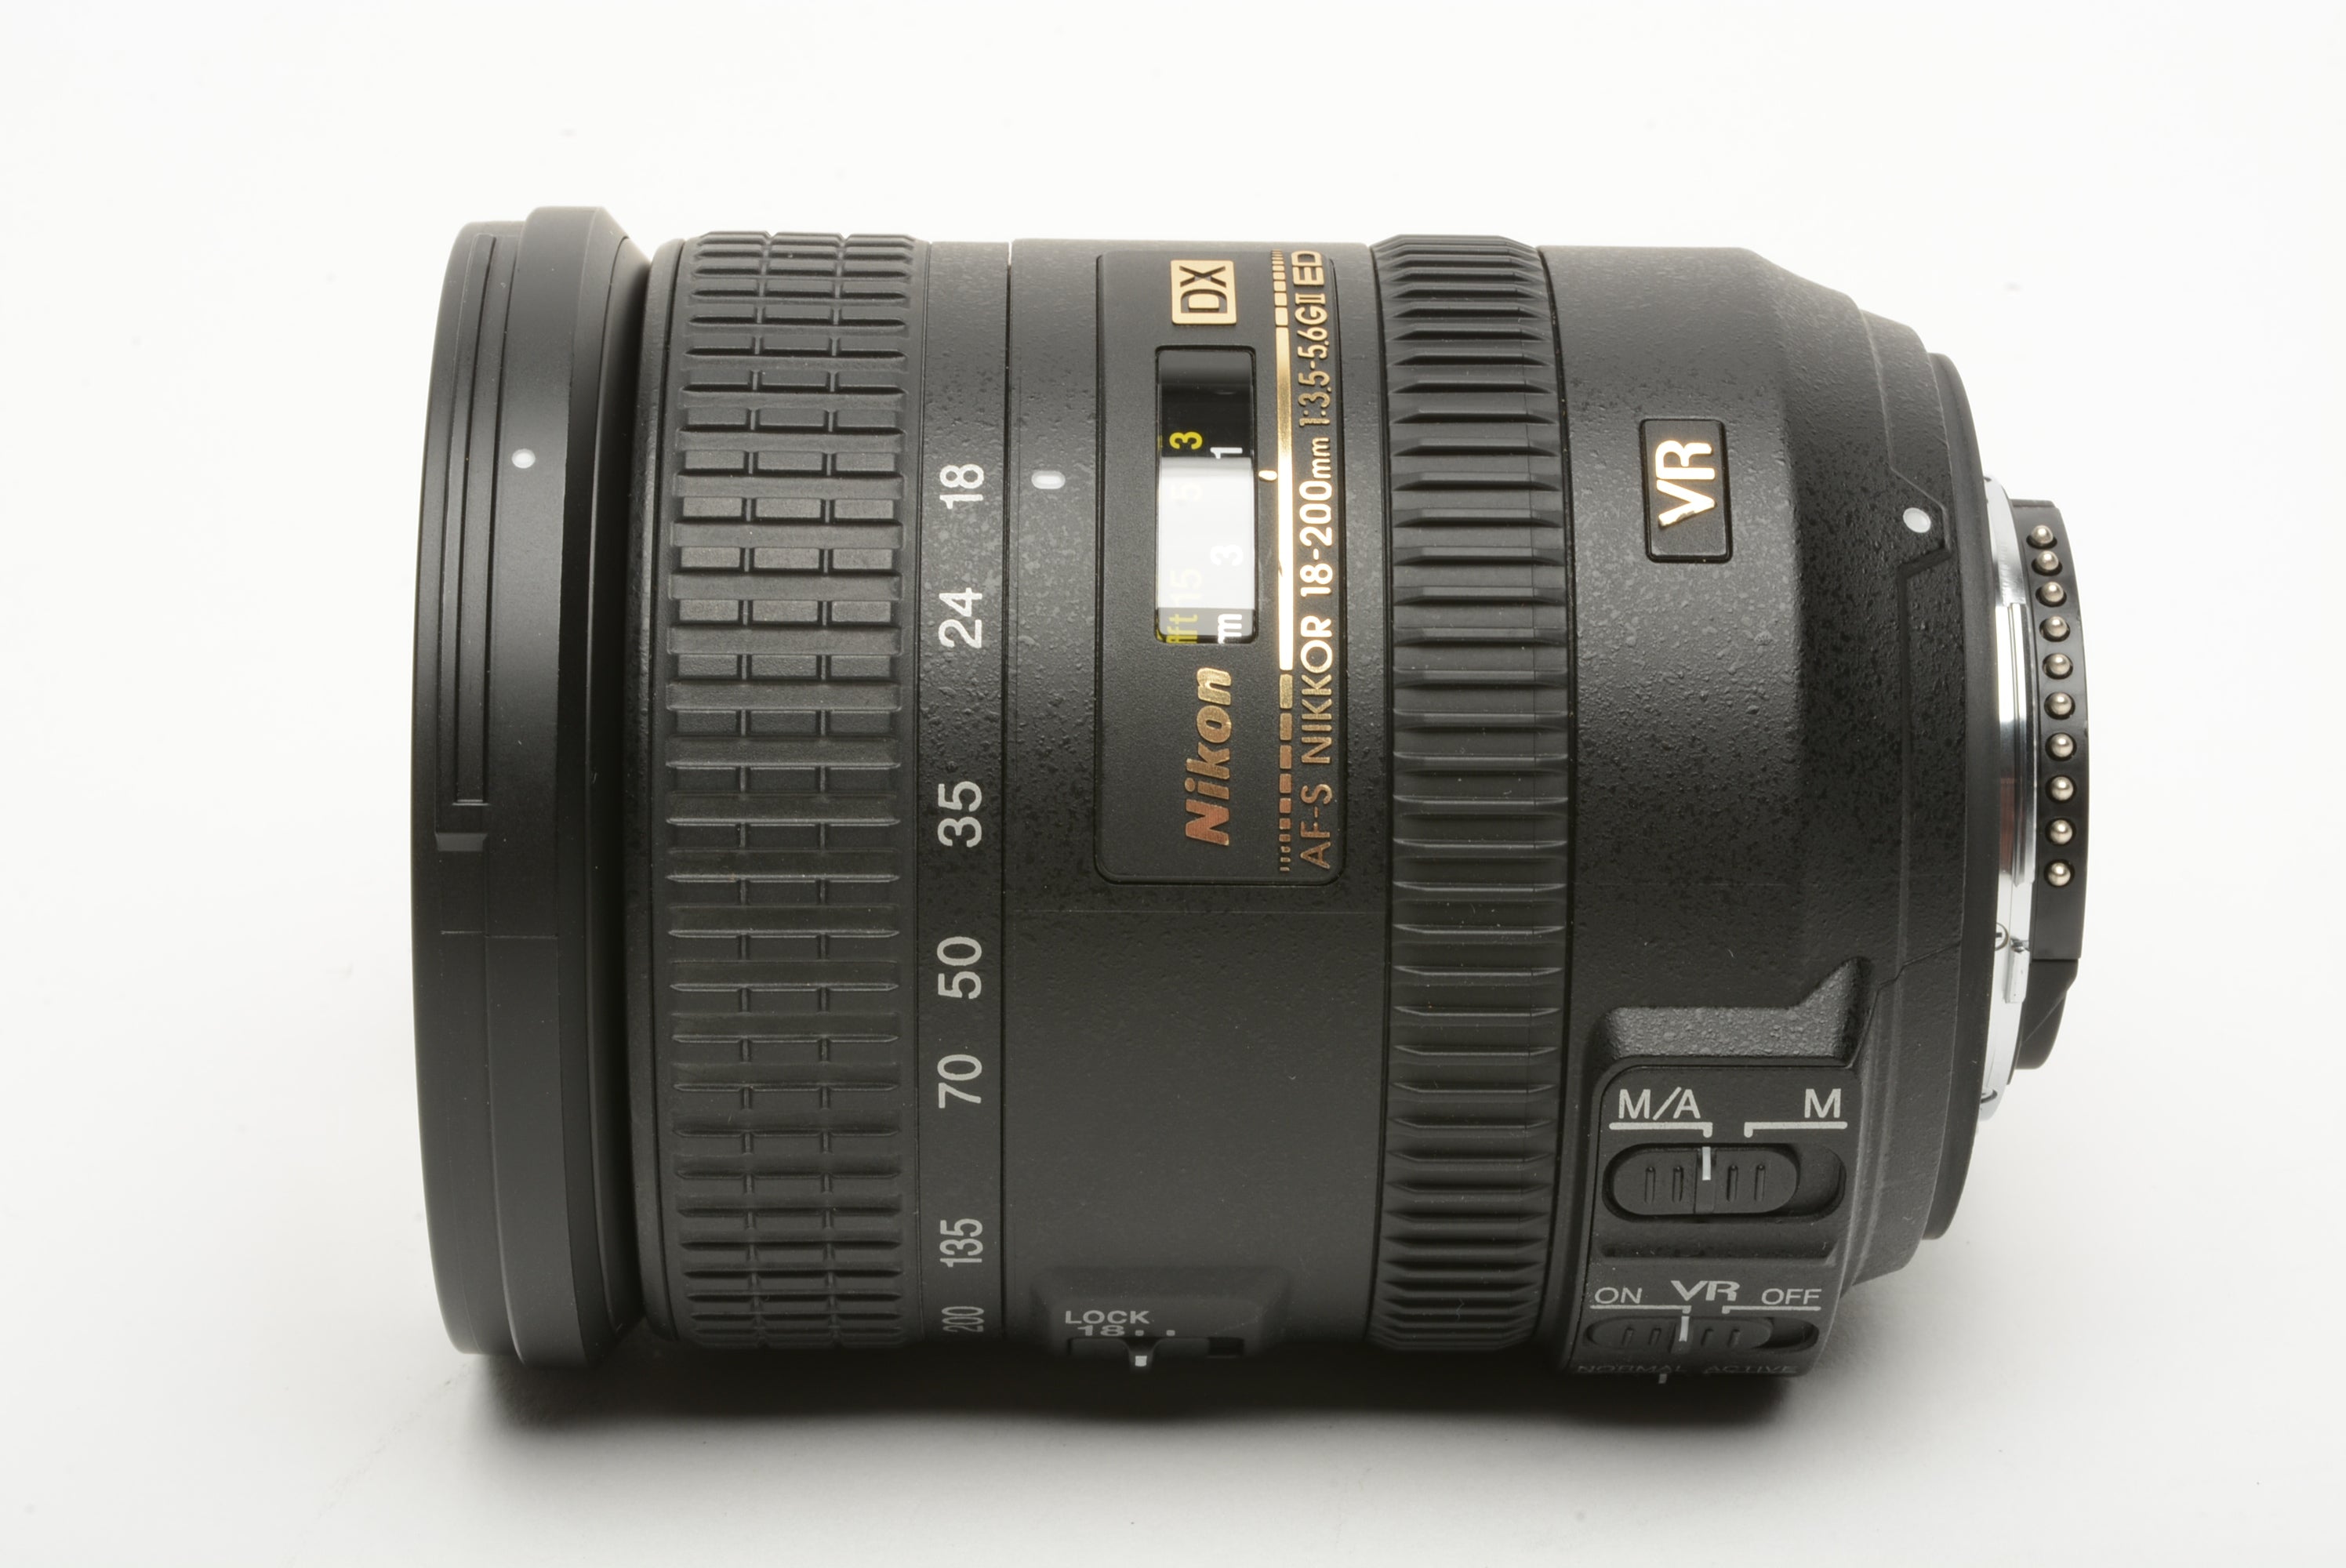 Nikon AF-S Nikkor 18-200mm f3.5-5.6G ED II Ed VR DX zoom lens